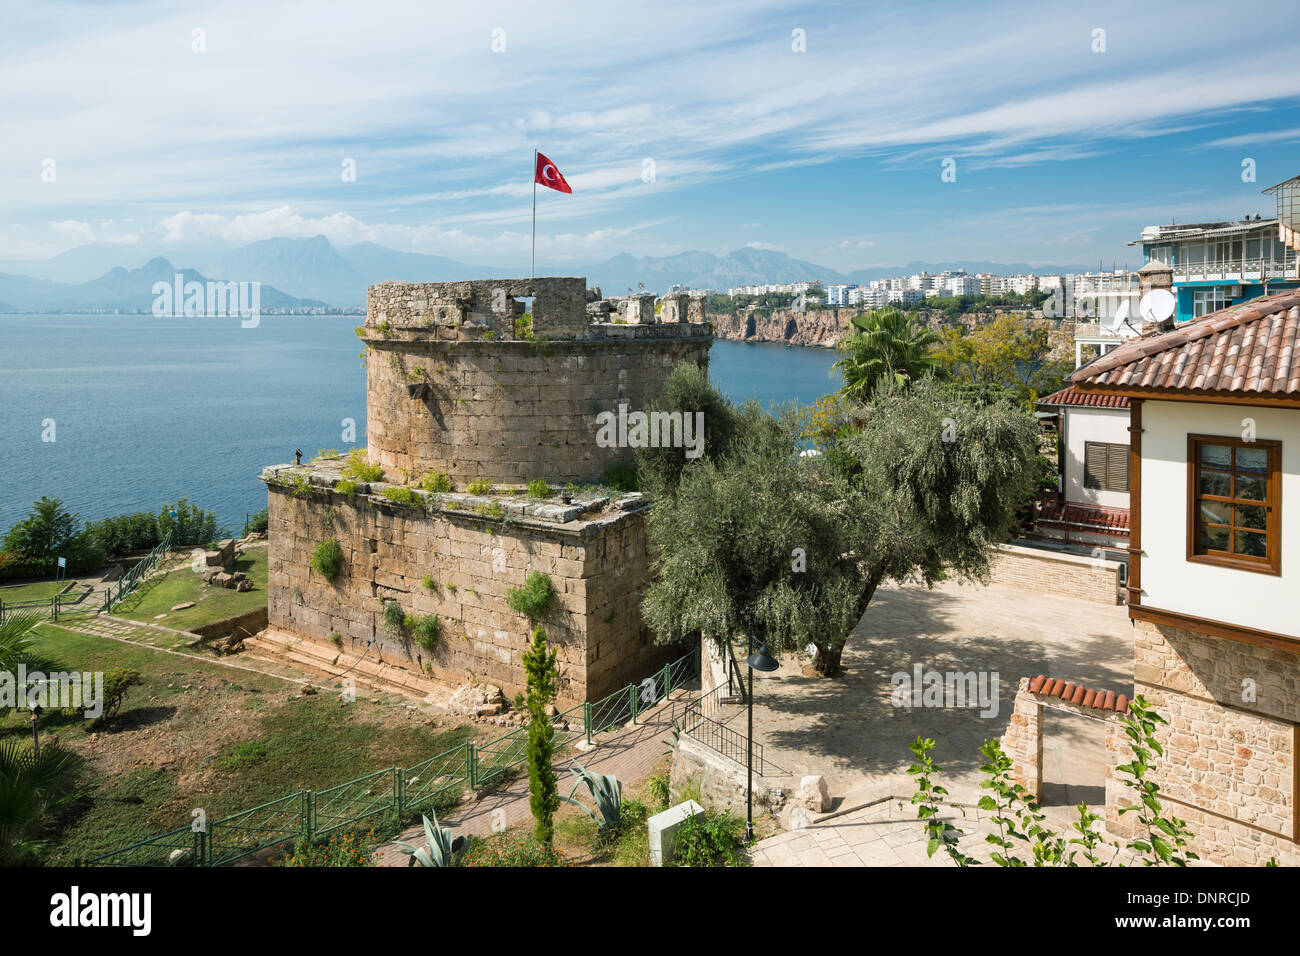 La antigua torre de castillo en Old Town Kaleici, Antalya. Vista sobre la bahía antalyan, del mar y de la ciudad de Antalya. Foto de stock